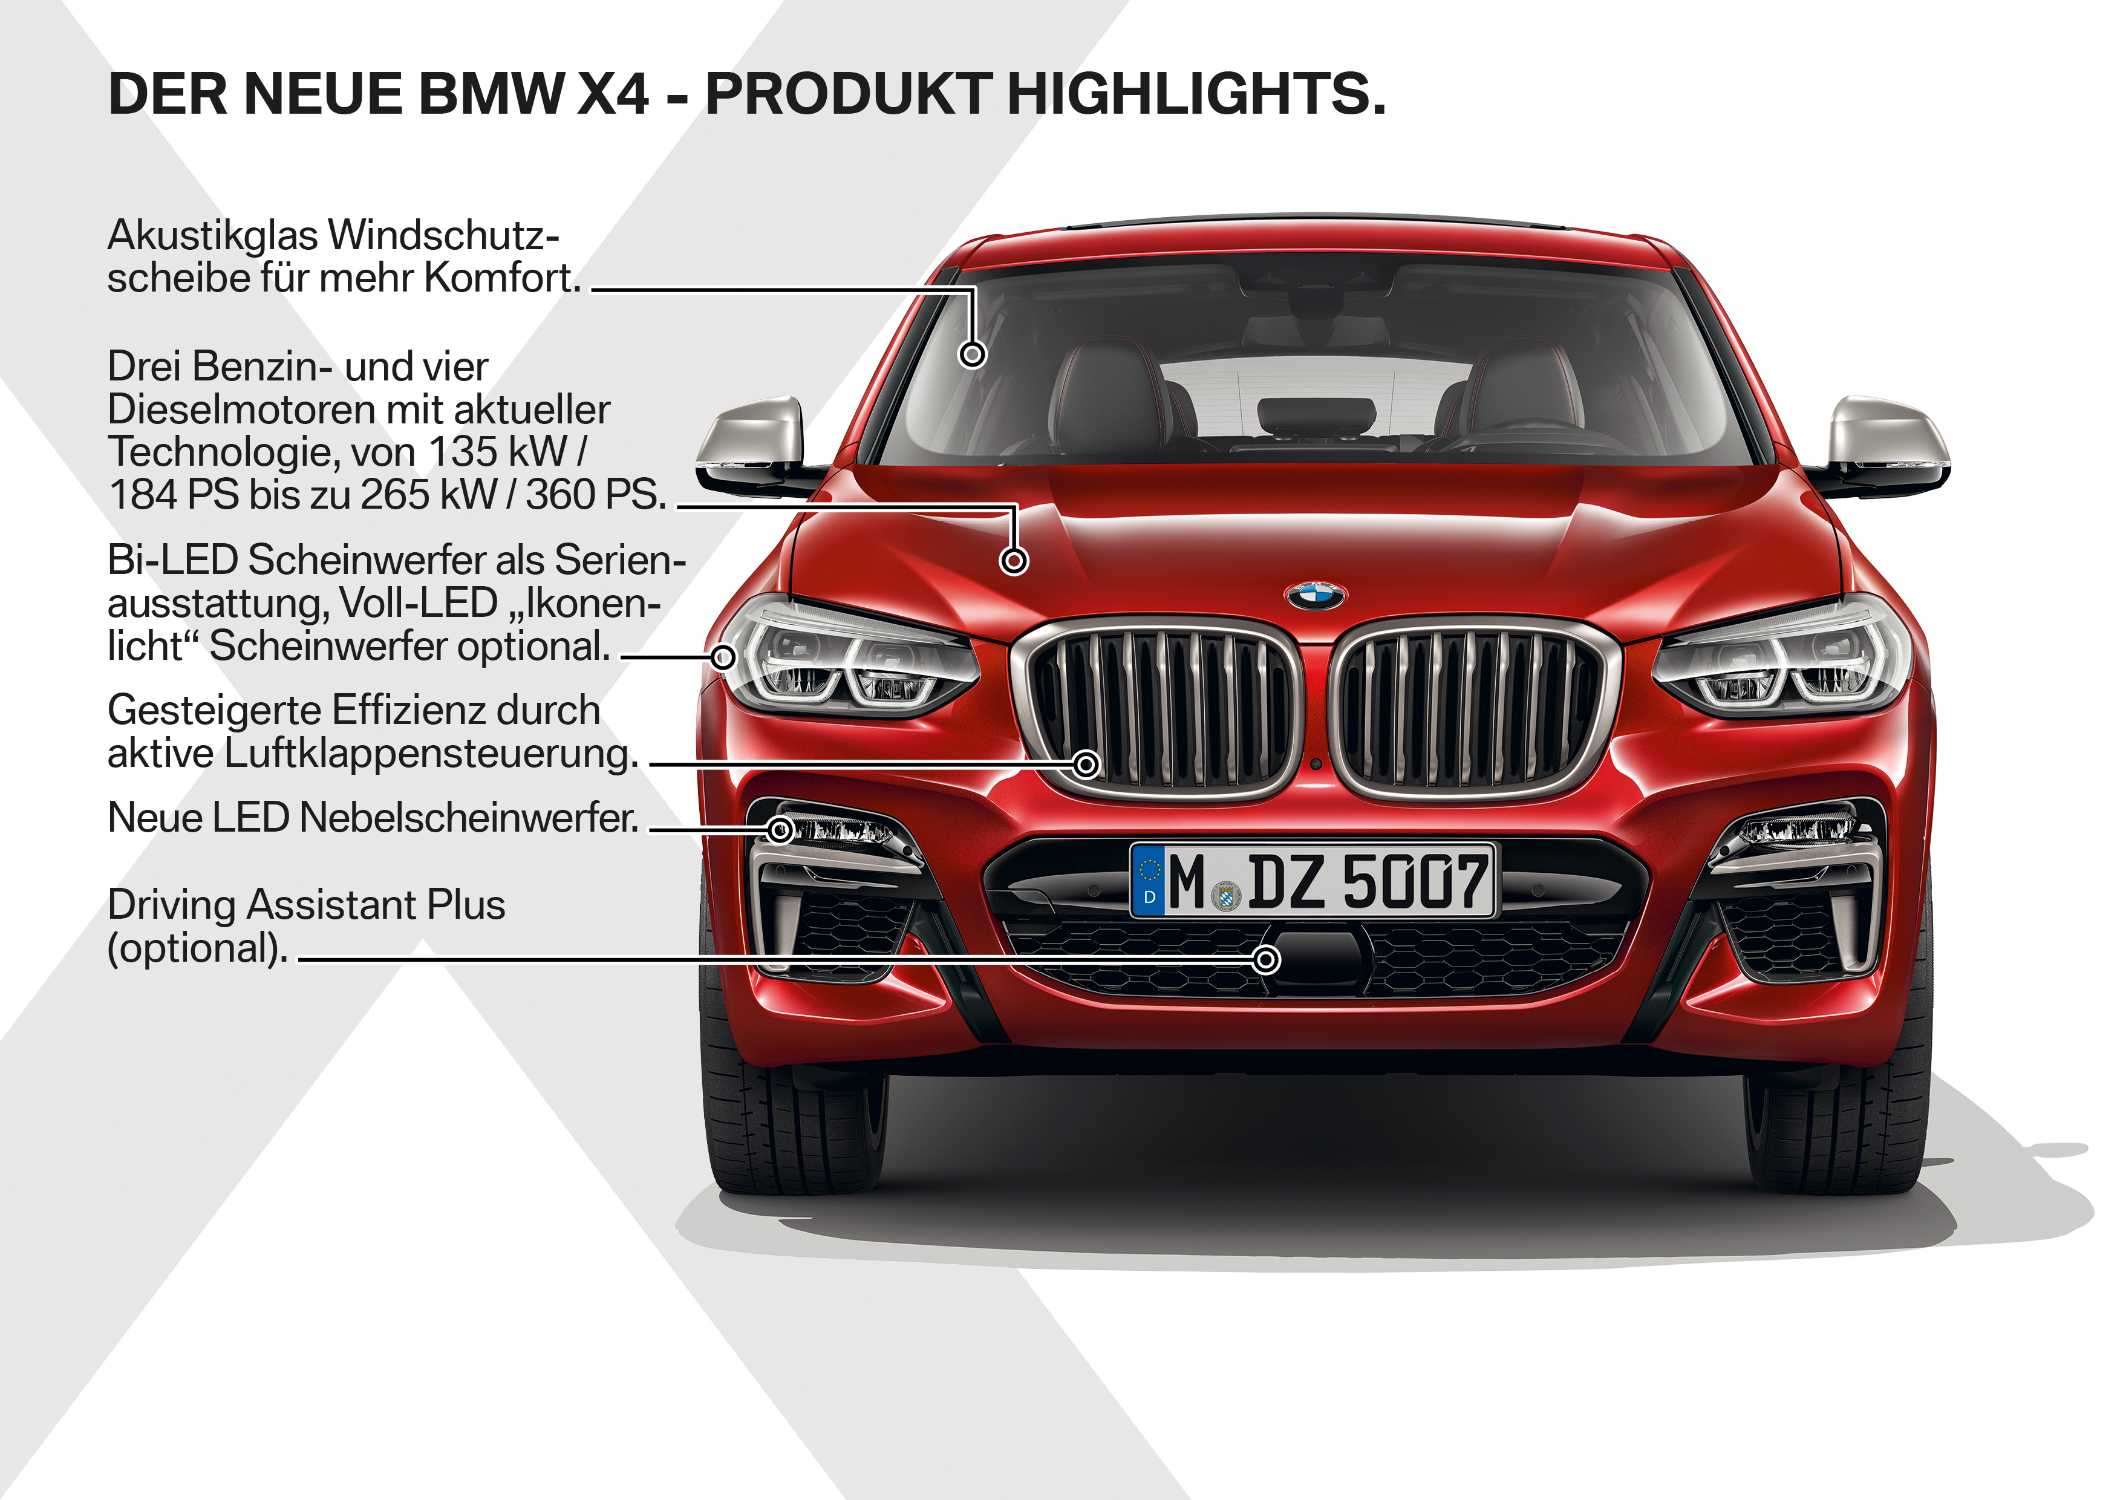 Der neue BMW X4 - Highlights (02/2018).